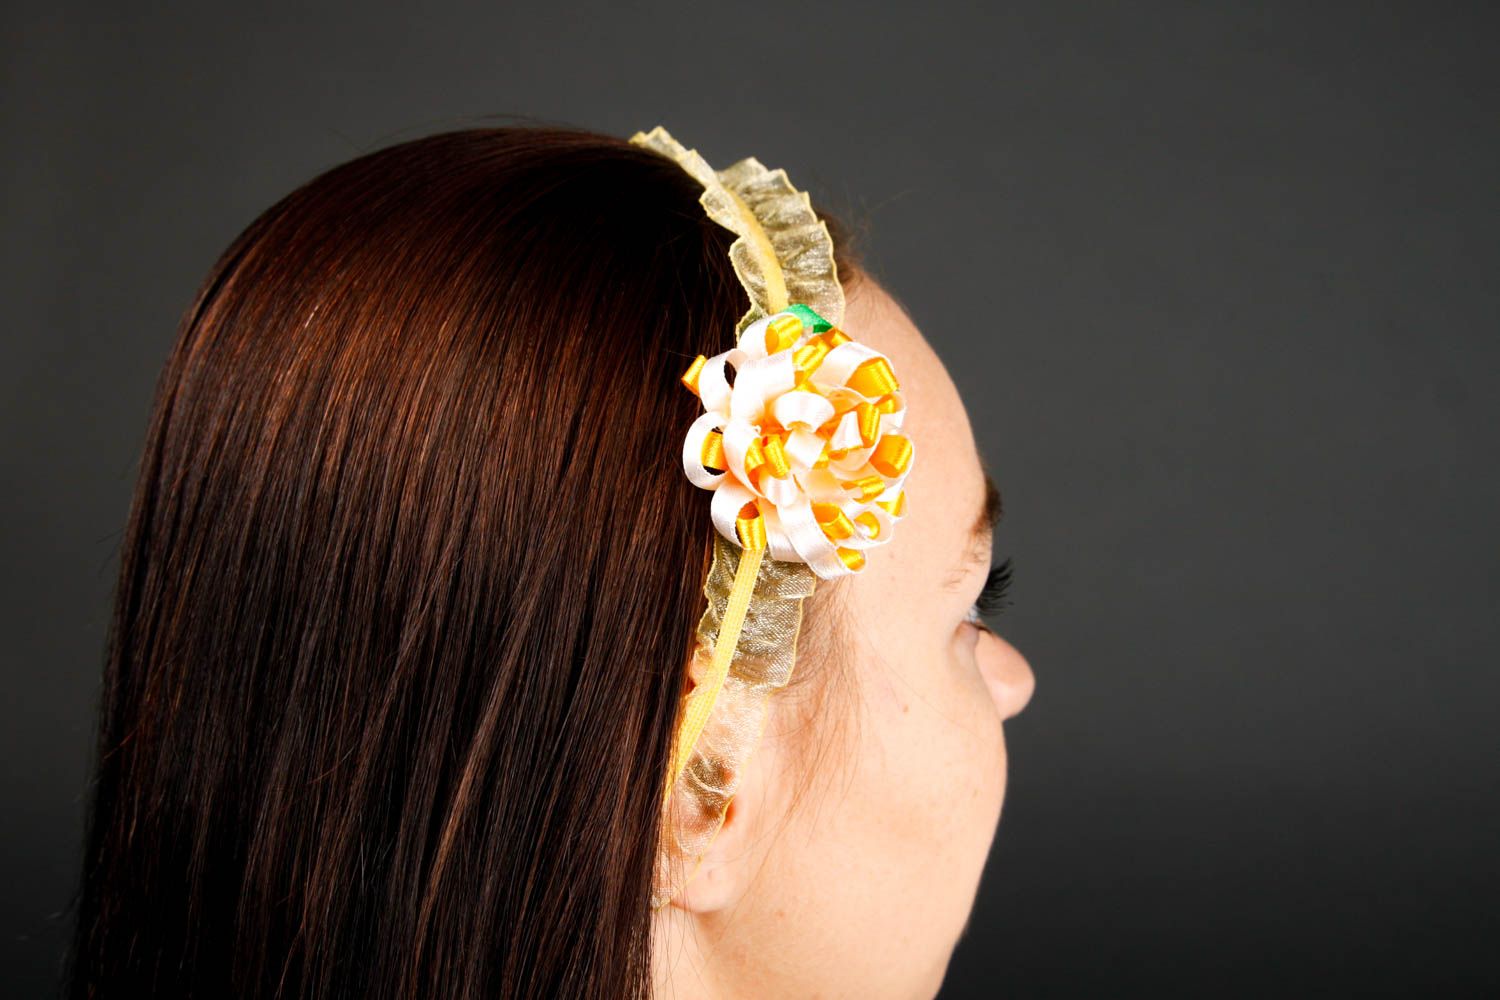 Handmade headband openwork headband for women hair accessories fashion jewelry photo 2